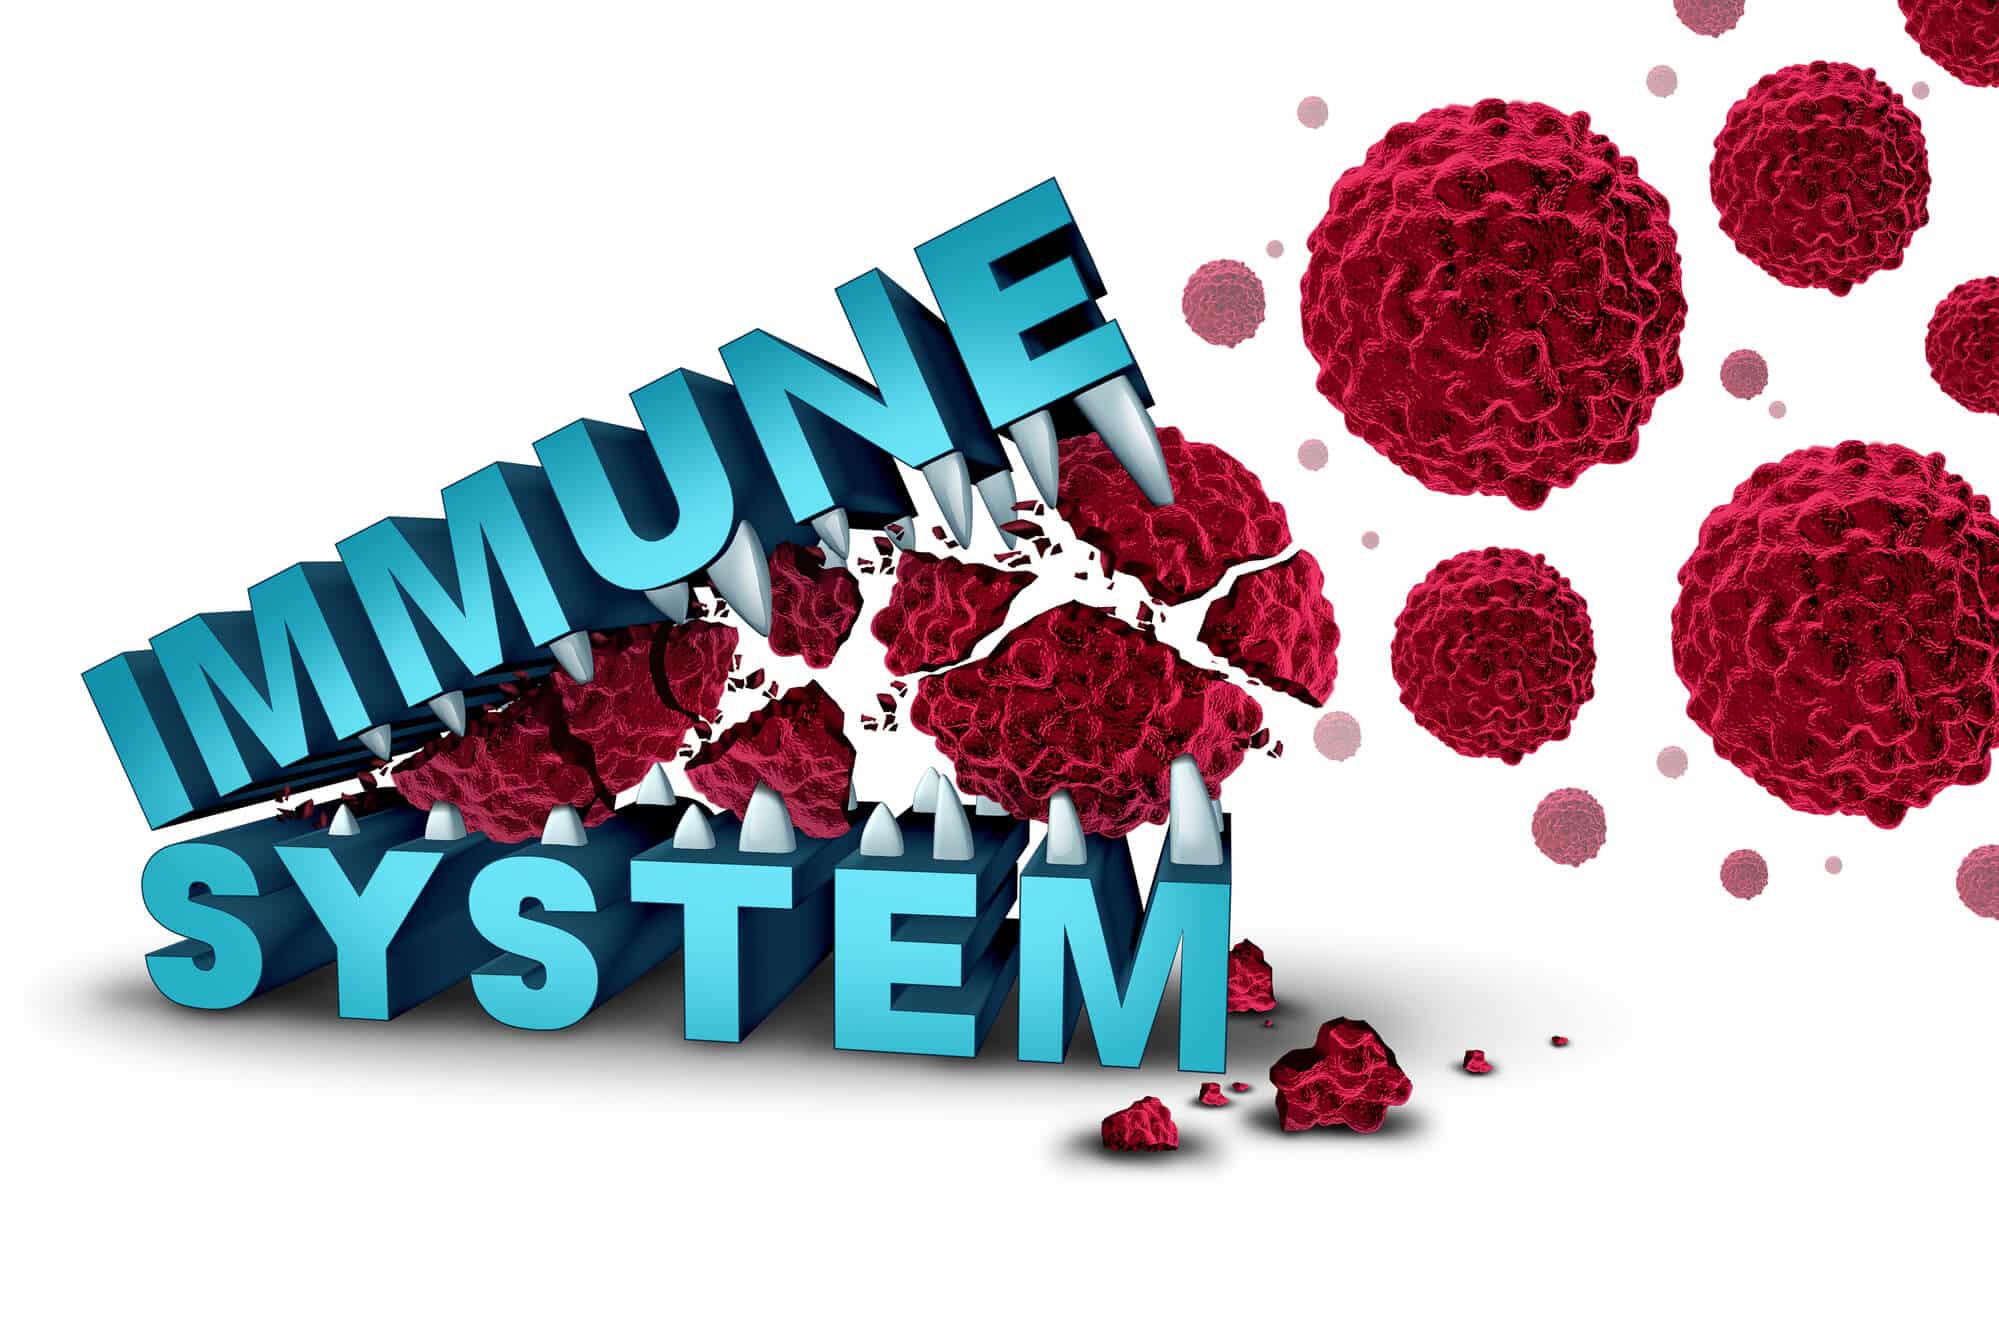 immune system. Image: depositphotos.com